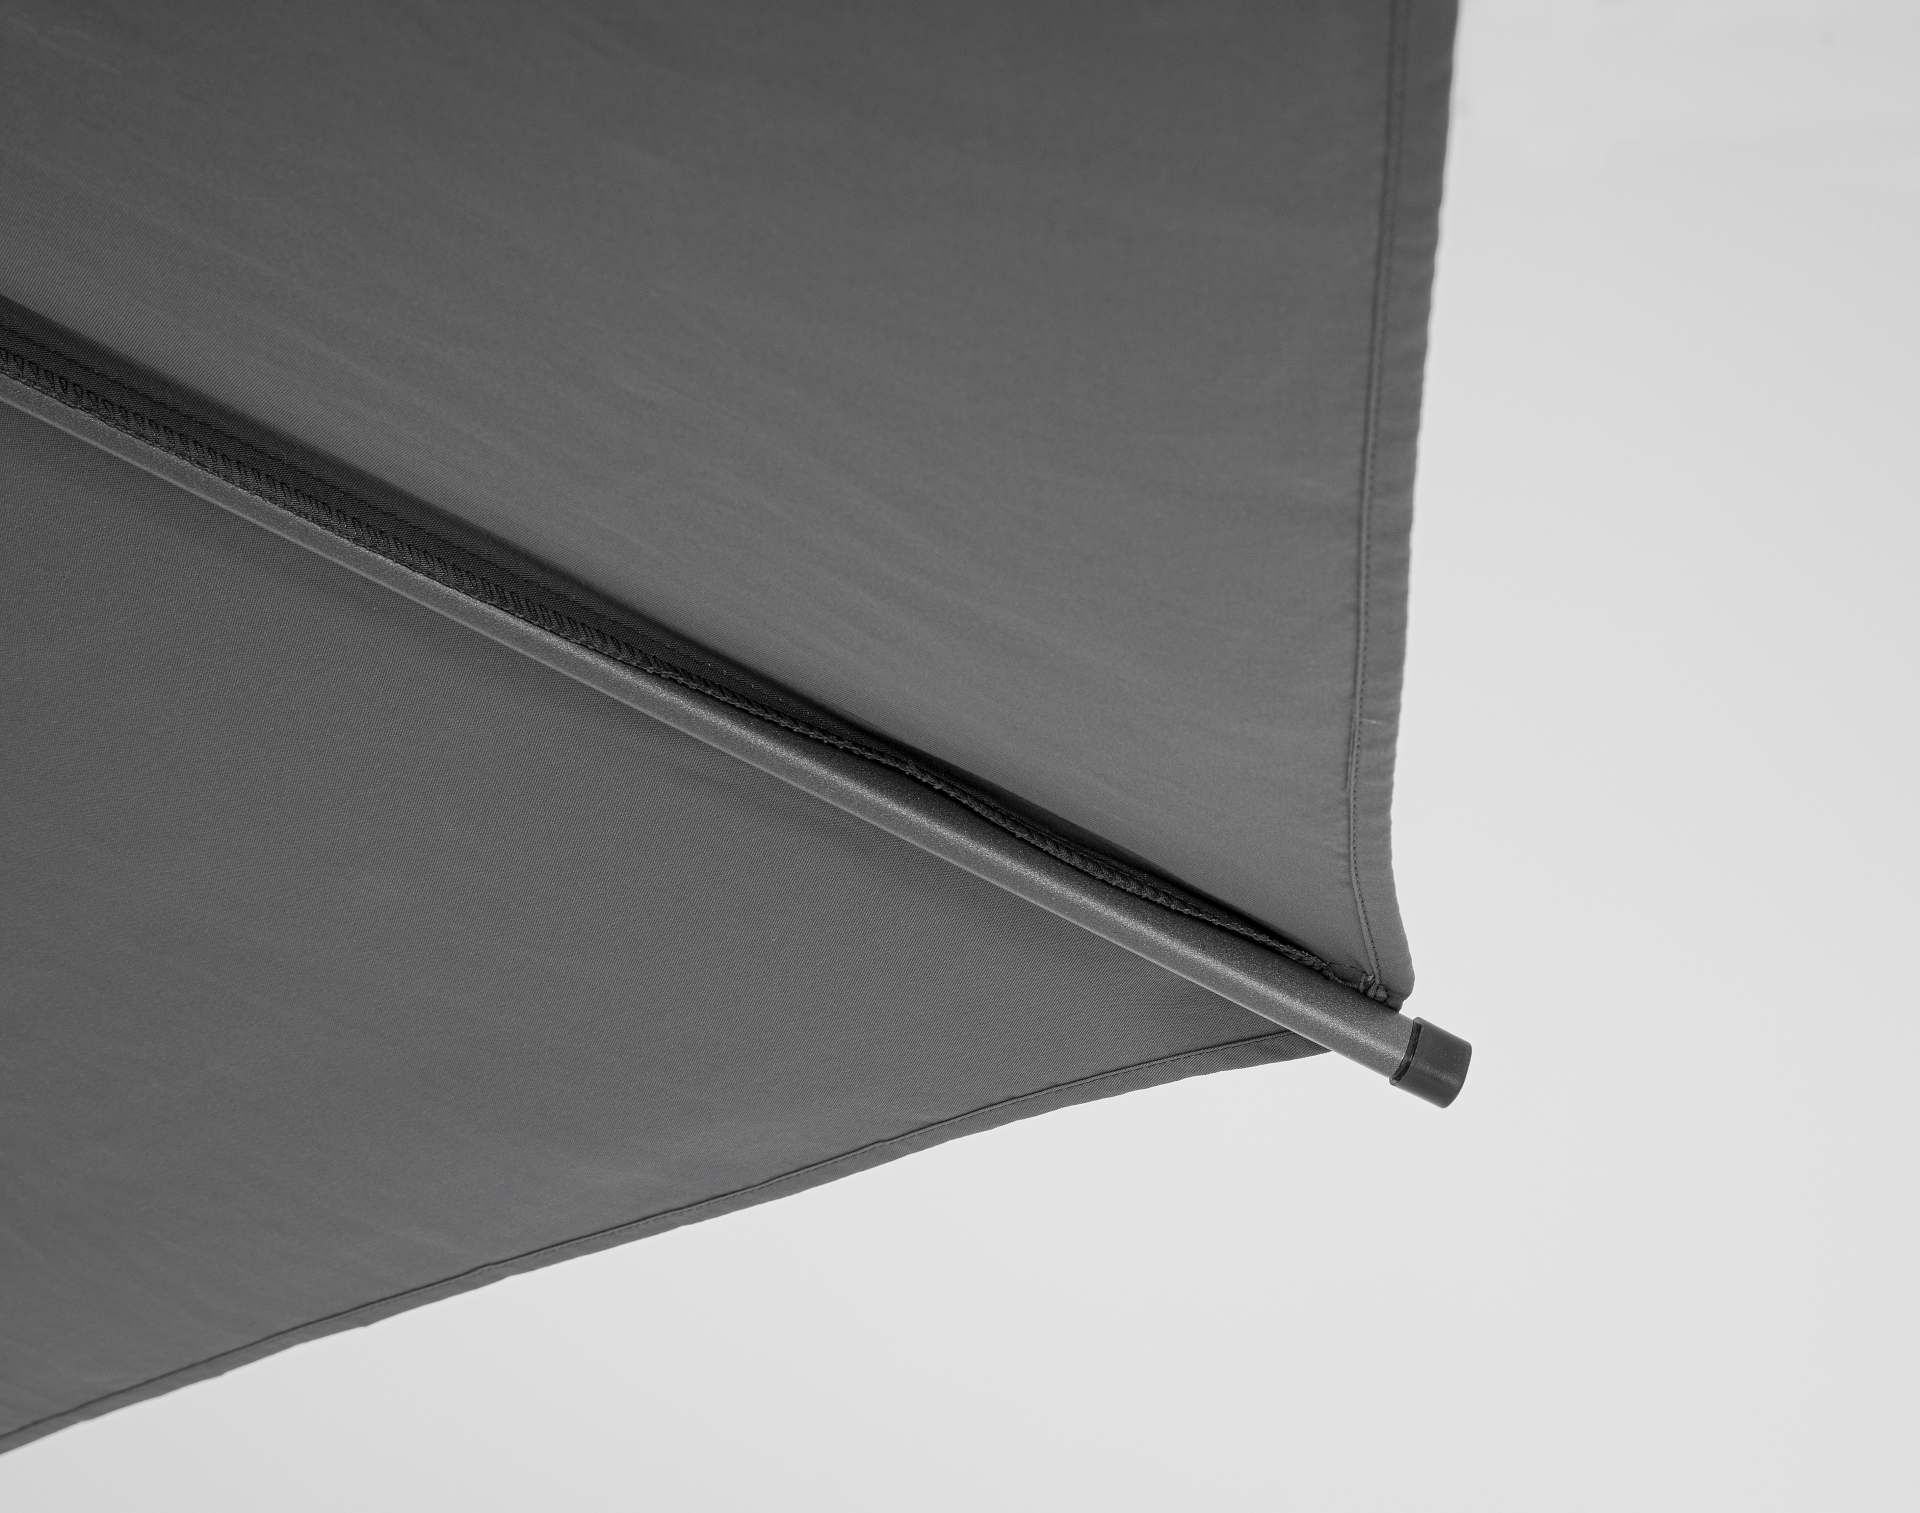 Der Sonnenschirm Rio überzeugt mit seinem klassischen Design. Gefertigt wurde er aus einer Polyester Plane, welche einen dunkelgrauen Farbton besitzt. Das Gestell ist aus Aluminium und hat eine Anthrazit Farbe. Der Sonnenschirm verfügt über einen Durchmes